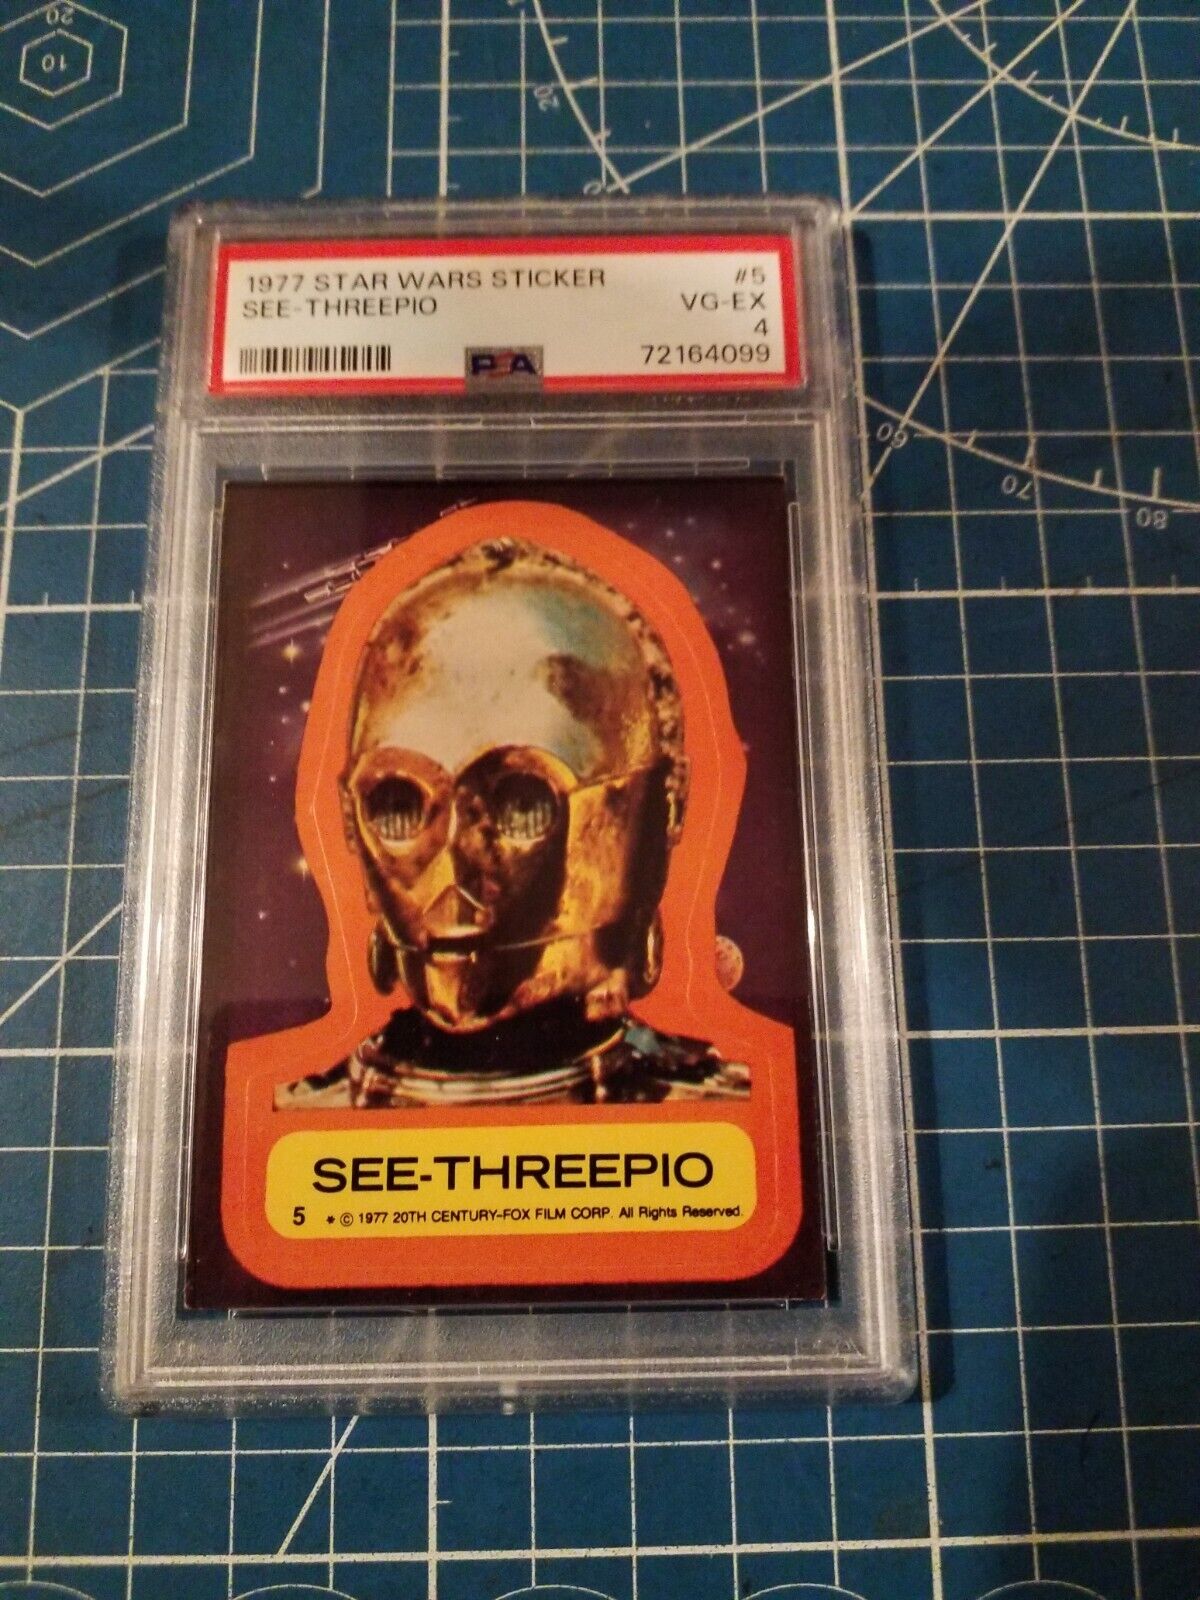 1977 Star Wars Sticker SEE-THREEPIO #5 PSA 4 SB7-24